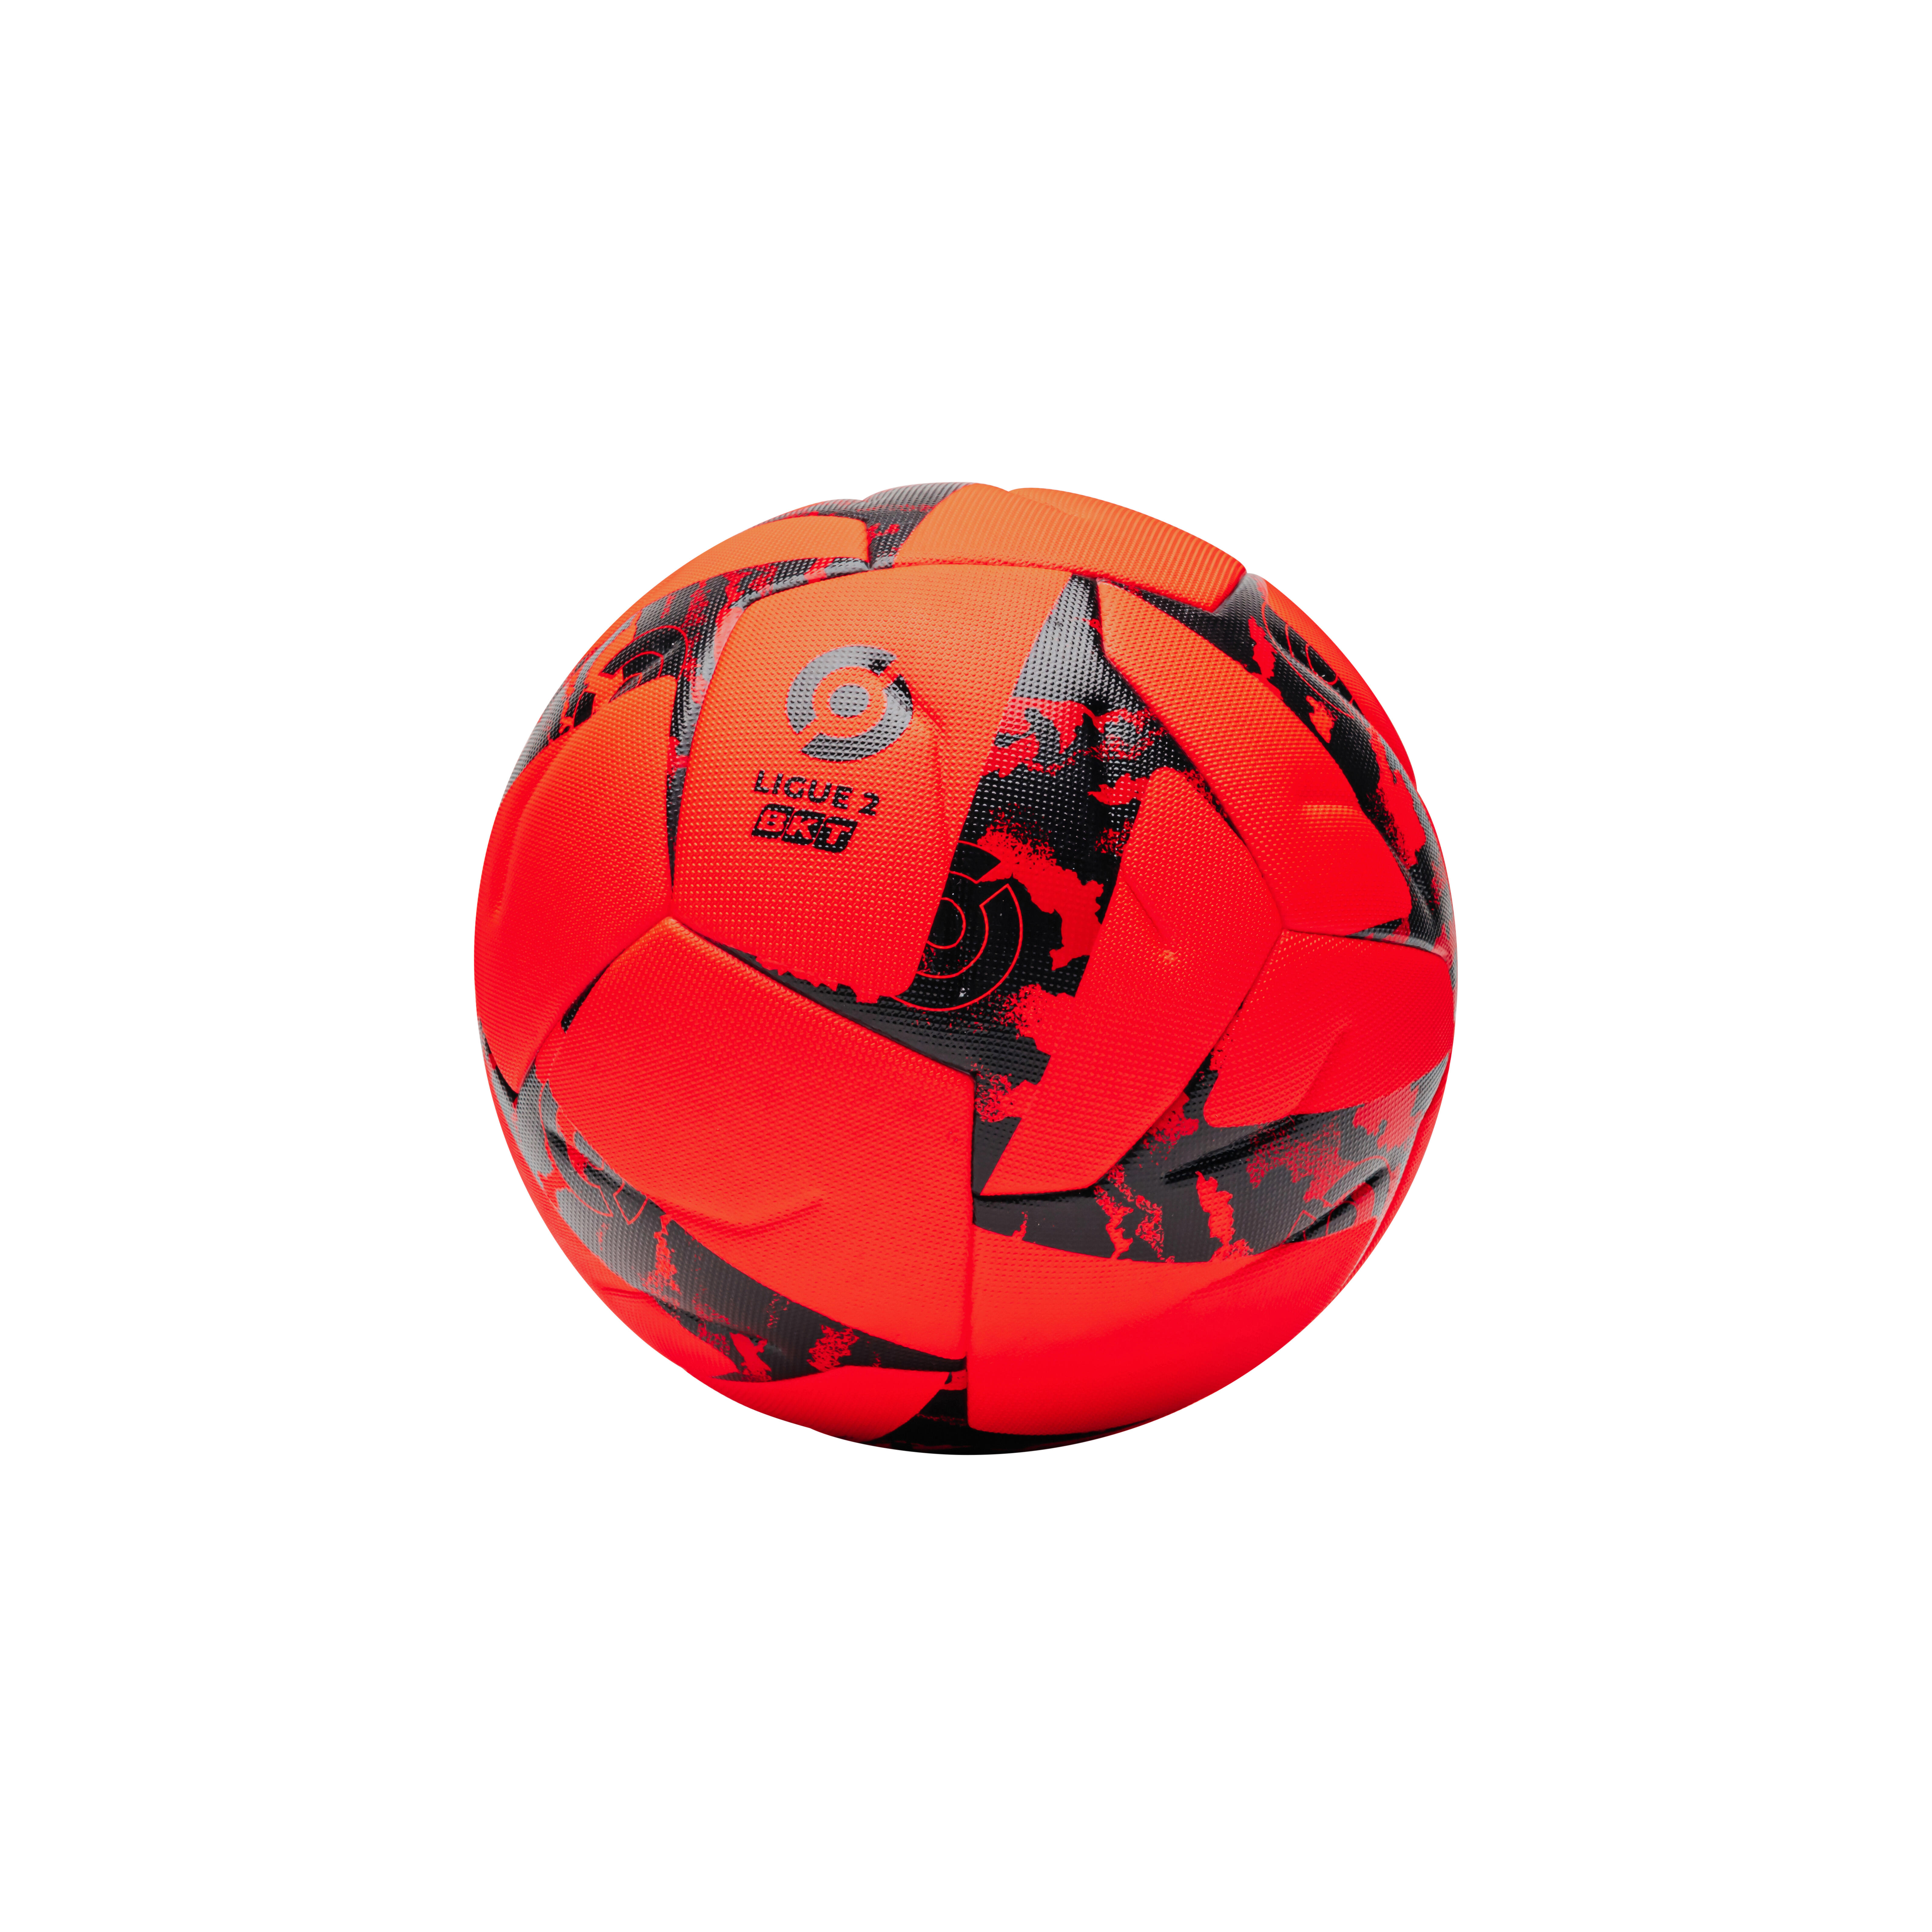 KIPSTA Ballon De Football Ligue 2 Bkt Officiel Match Ball Hiver 2022 -